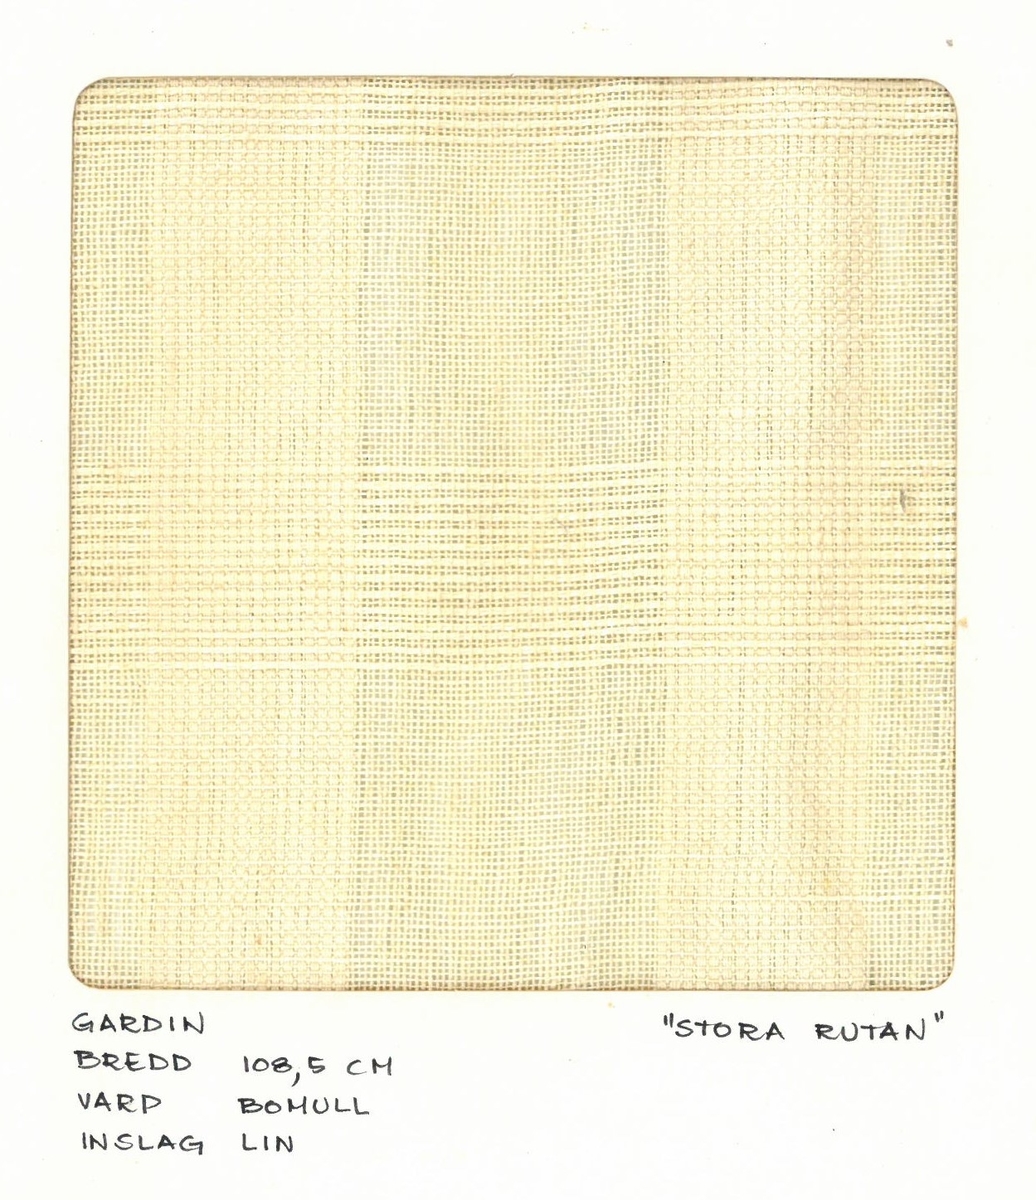 Pärm med vävprover till gardiner.
Gardin "Stora rutan"
Formgivare: Kerstin Butler 1961-1969